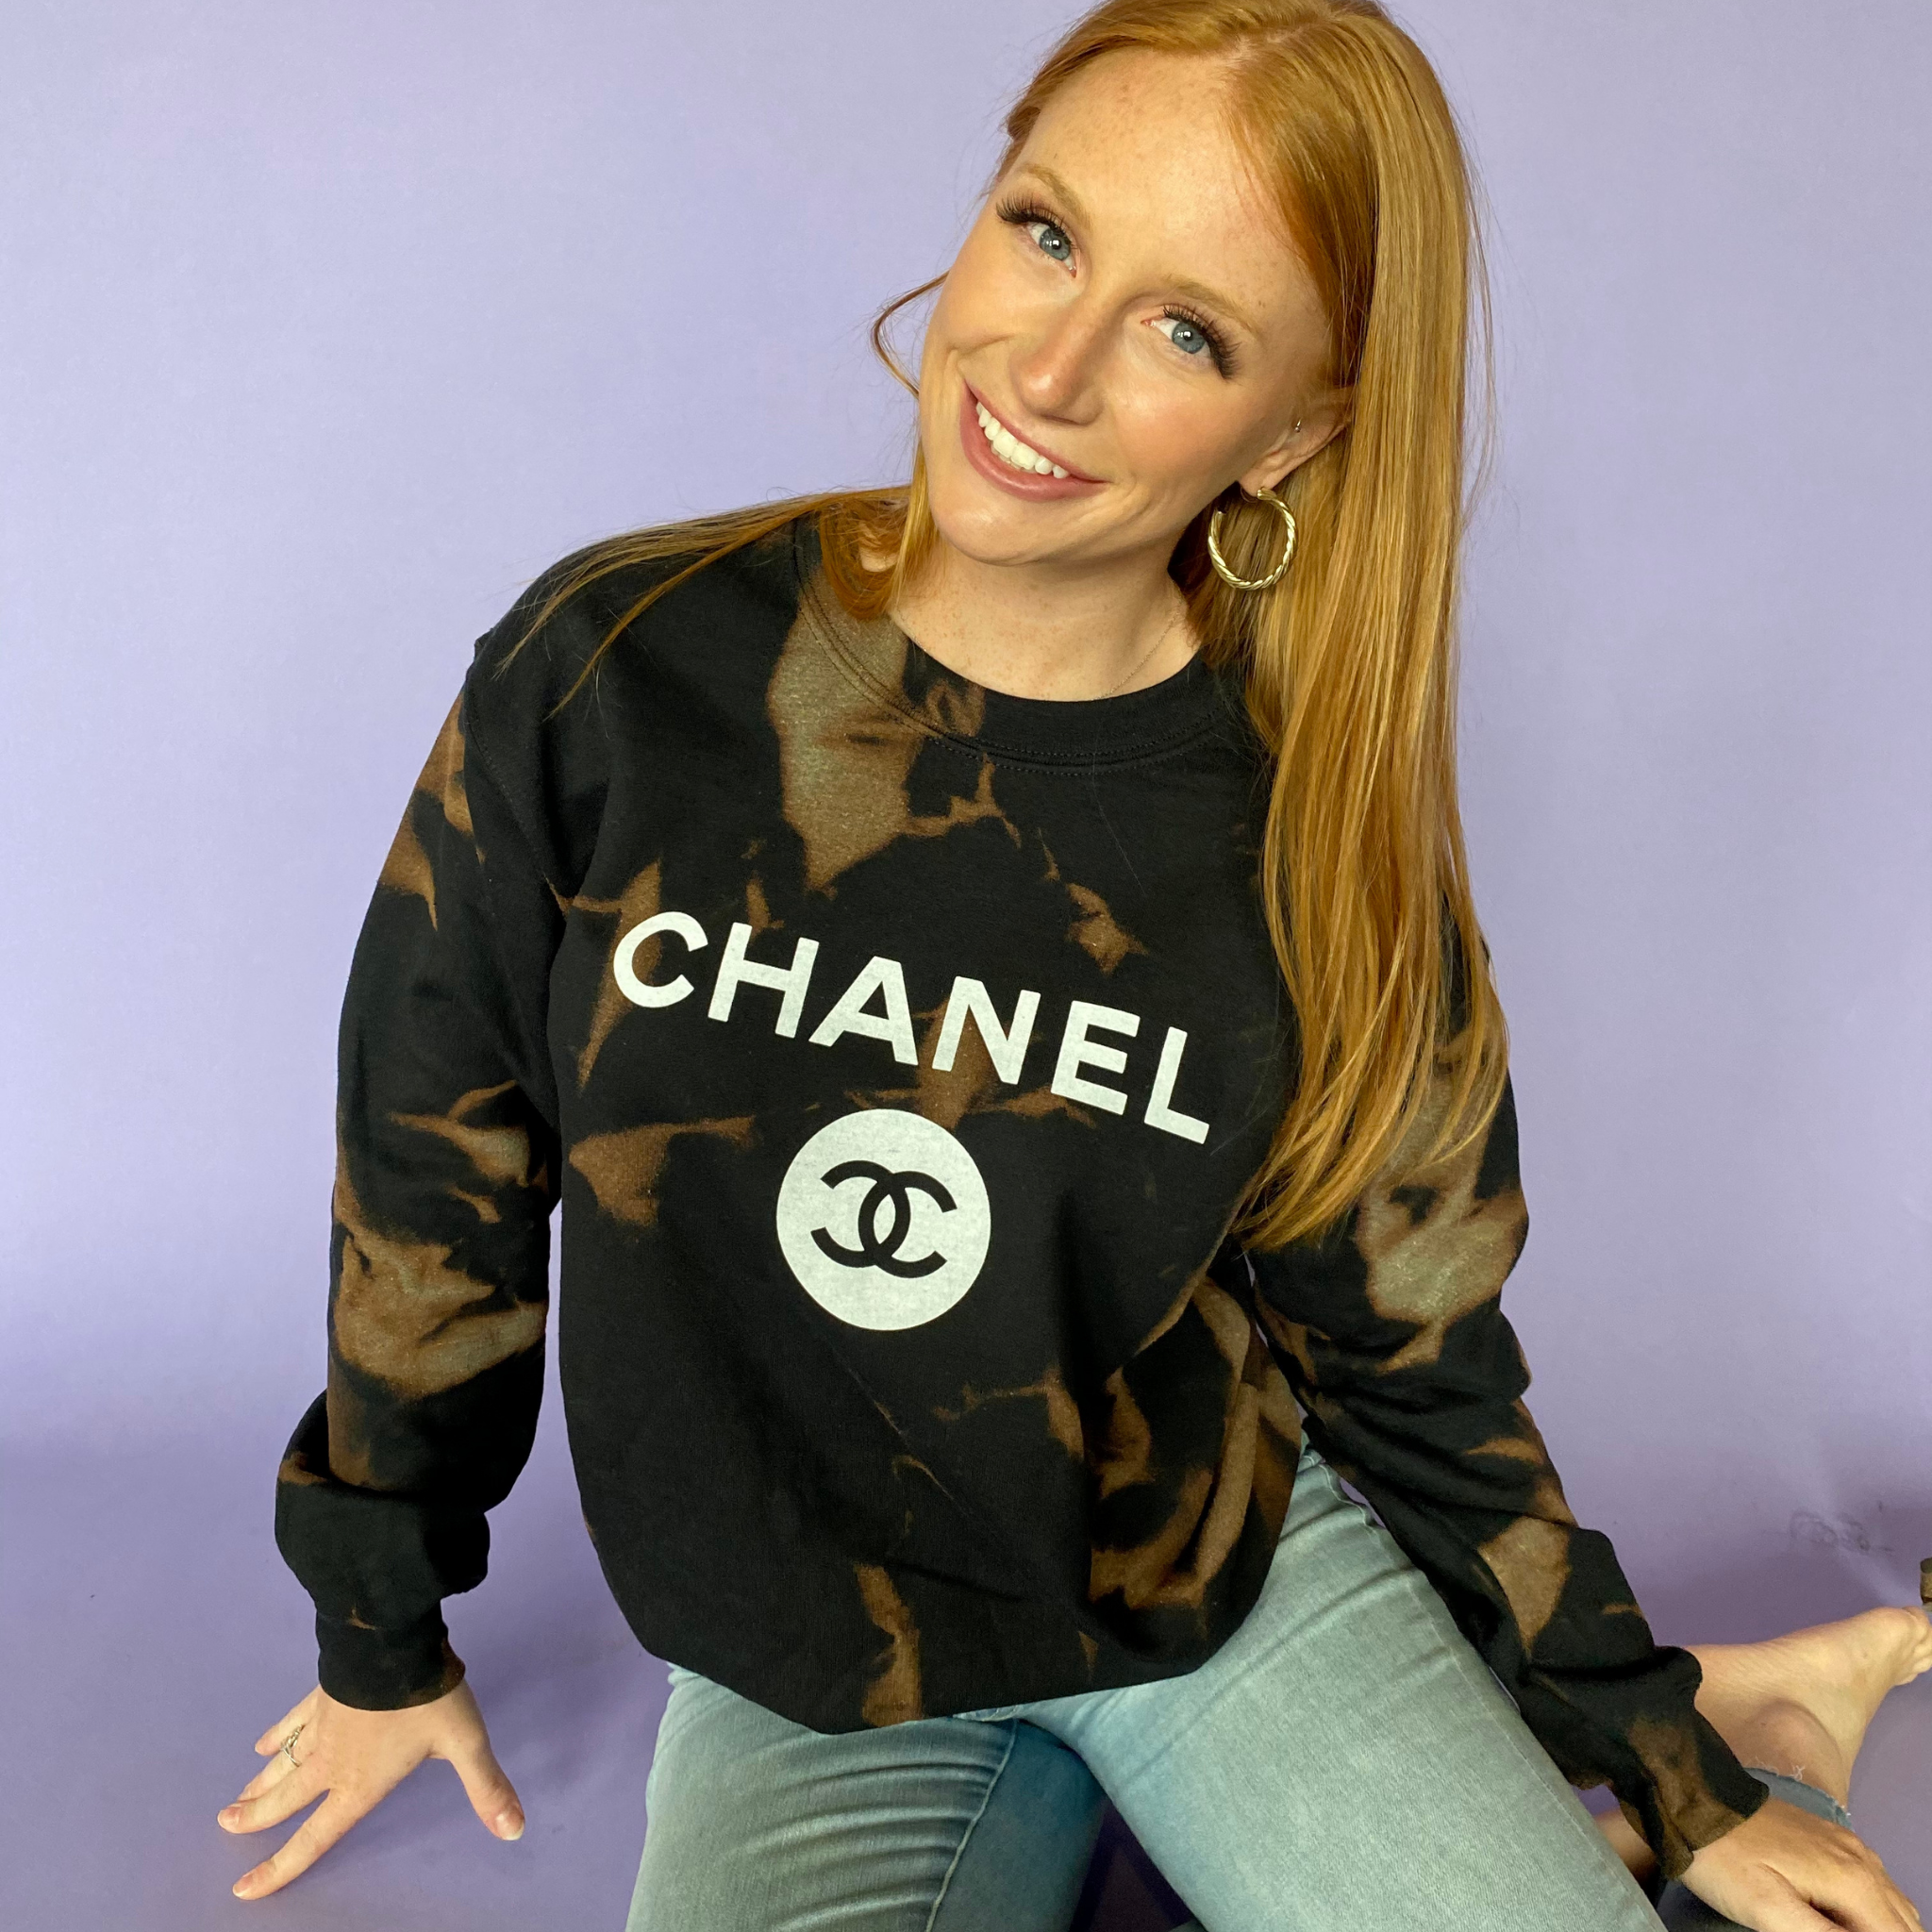 Chanel Women's Sweatshirts & Hoodies